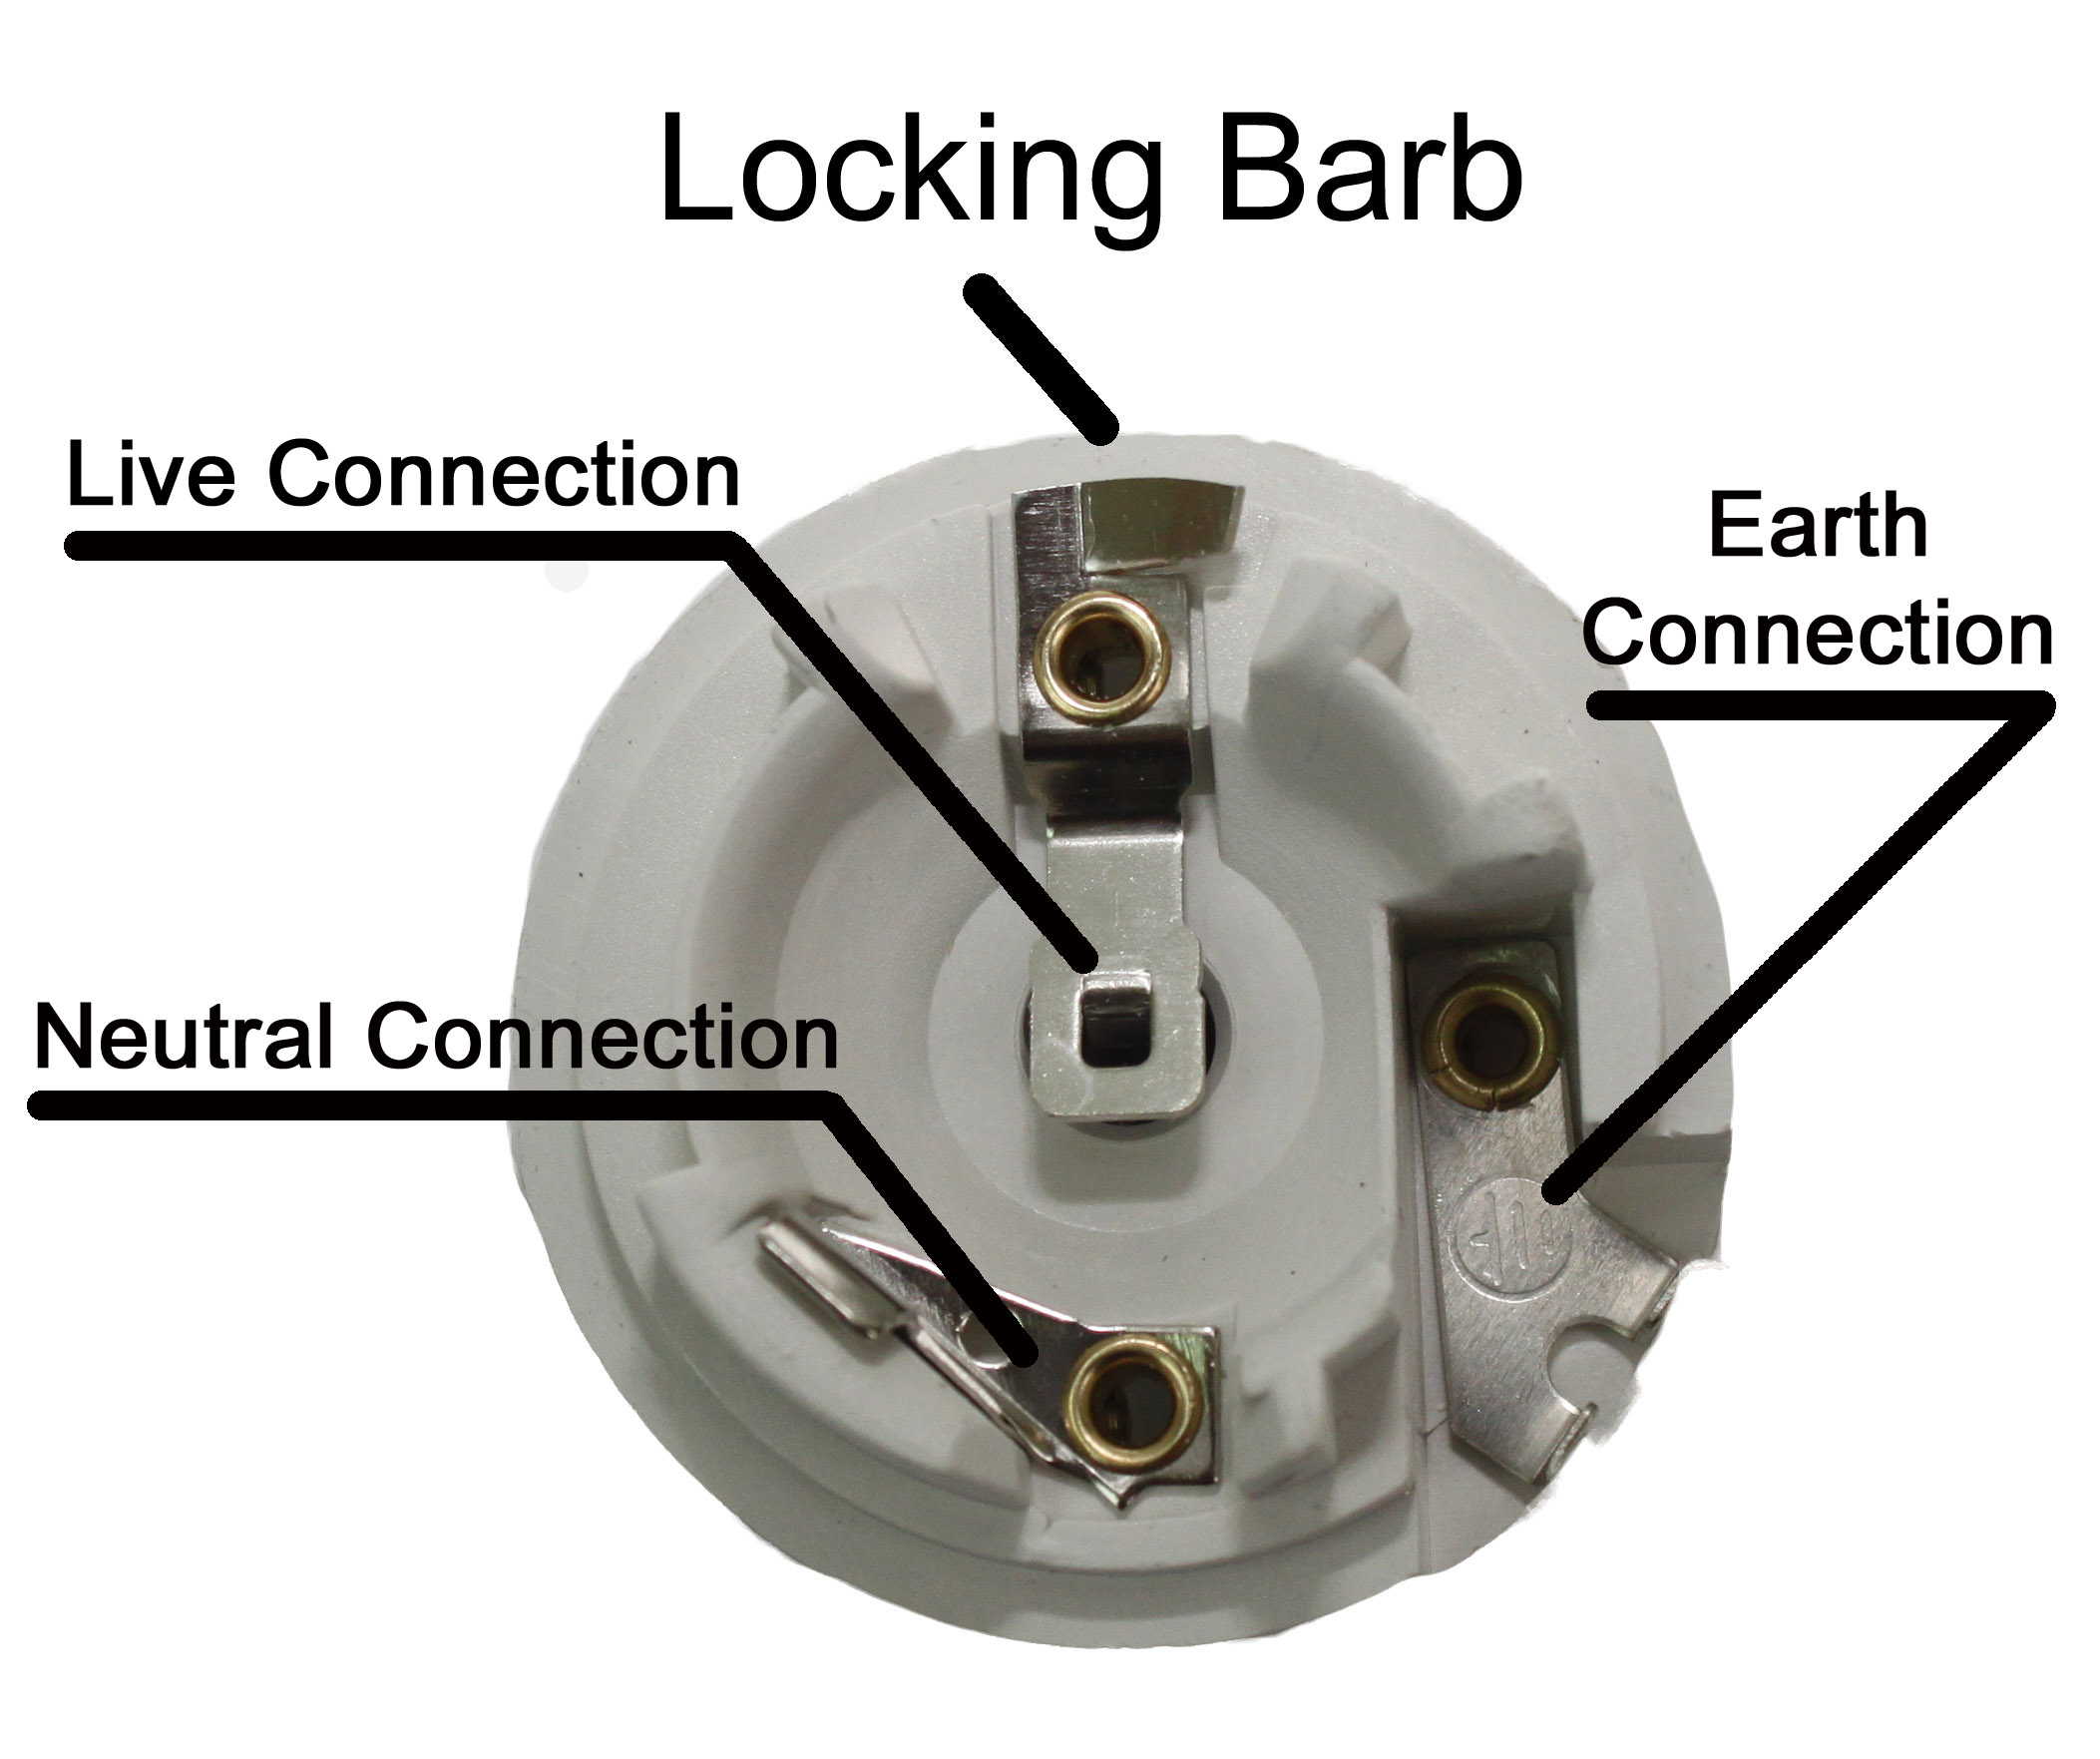 replacing a light socket | Decoratingspecial.com ceramic light socket wiring diagram 